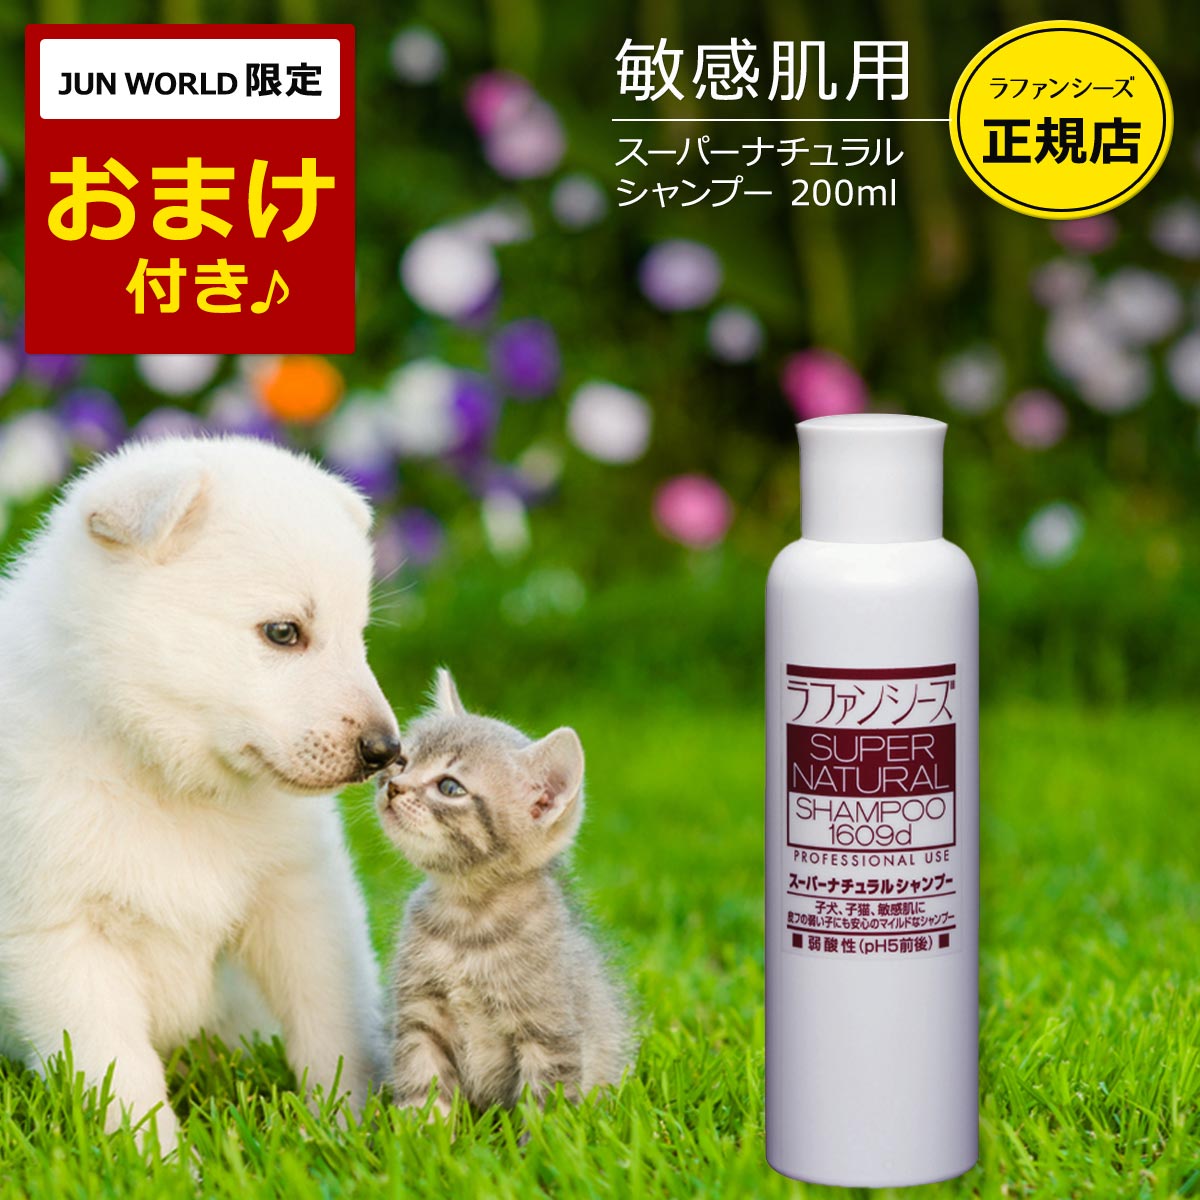 商品情報商品名ラファンシーズ スーパーナチュラルシャンプー内容量200ml製造国日本保存方法高温・多湿及び直射日光を避け、涼しい所に保管してください。メーカーシグマテックインターナショナル株式会社ラファンシーズ スーパーナチュラル シャンプー 200ml (エコ洗剤2個プレゼント) 敏感肌のワンちゃんネコちゃん、仔犬・仔猫に ---------------------お得セットはこちら↓--------------------- 敏感肌、皮フの弱いパピー・キツンなどのケアに スムース・コートのワンちゃんに 低刺激性のやさしいシャンプー＆リンスにこだわる方に 店長のタカハシです。こちらのメーカーの会長さん、ご自身の髪の毛もラファンシーズで洗うそうです。人間が使っても大丈夫なものをペットにも提供する。人間も喜ばなければペットも喜ばない。被毛と皮フを傷めないように、被毛を健やかに保てるように、徹底的にやさしさと安全性にこだわった商品です。ぜひ愛犬愛猫にご利用ください。 1